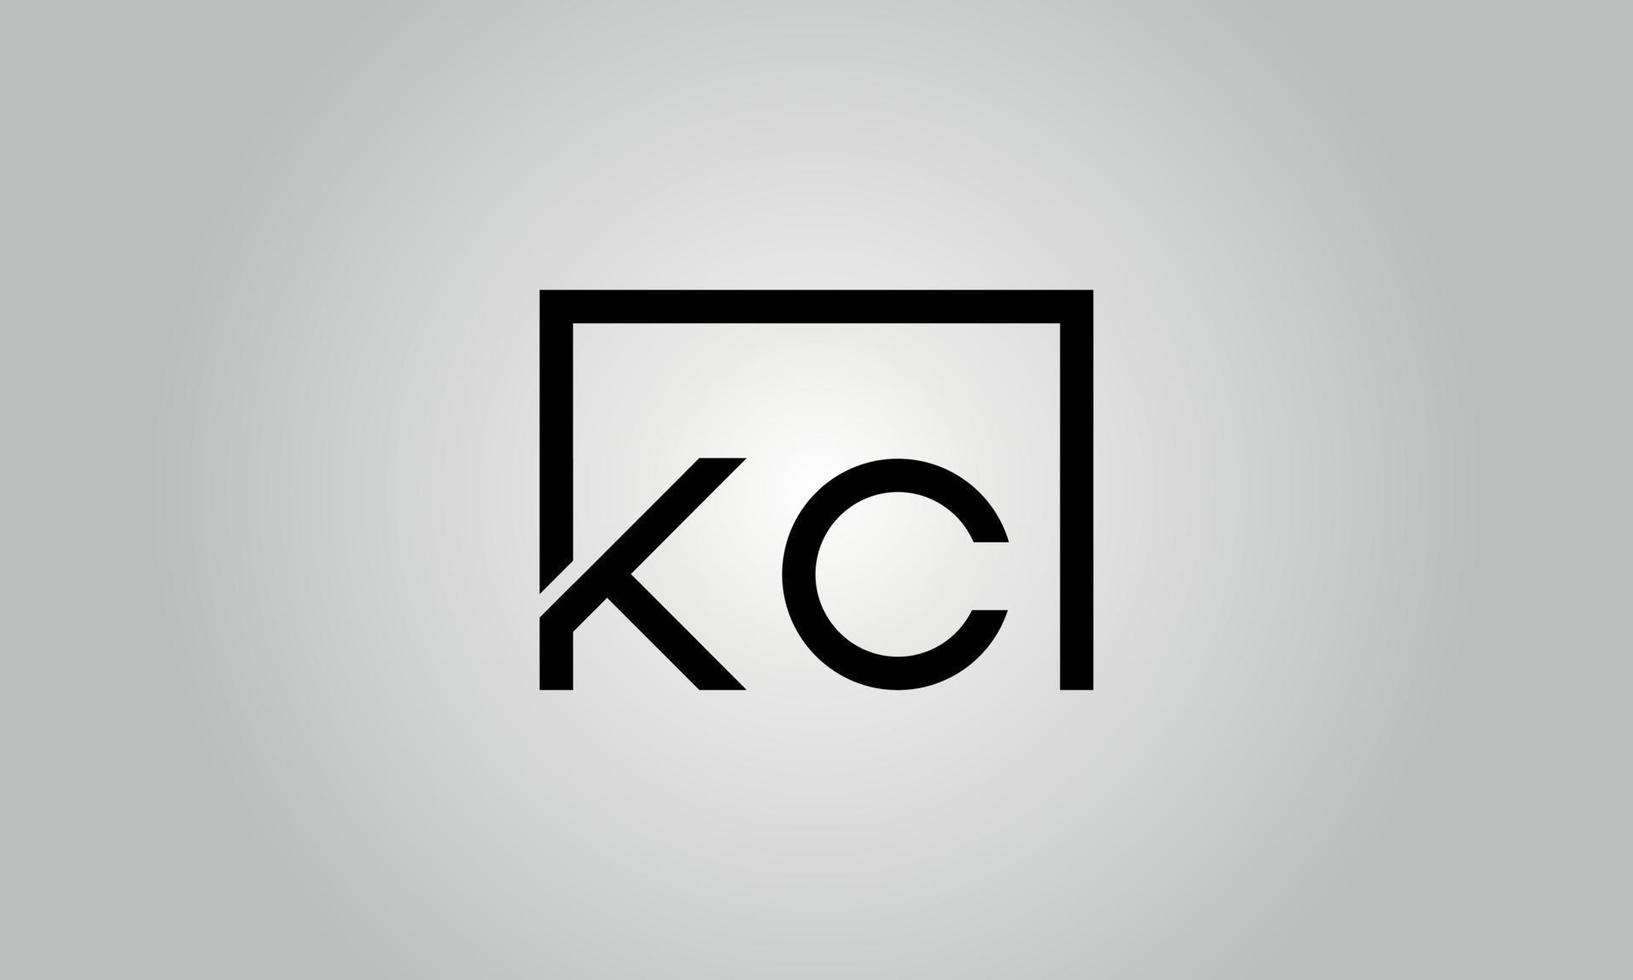 création de logo lettre kc. logo kc avec forme carrée dans le modèle vectoriel gratuit de couleurs noires.